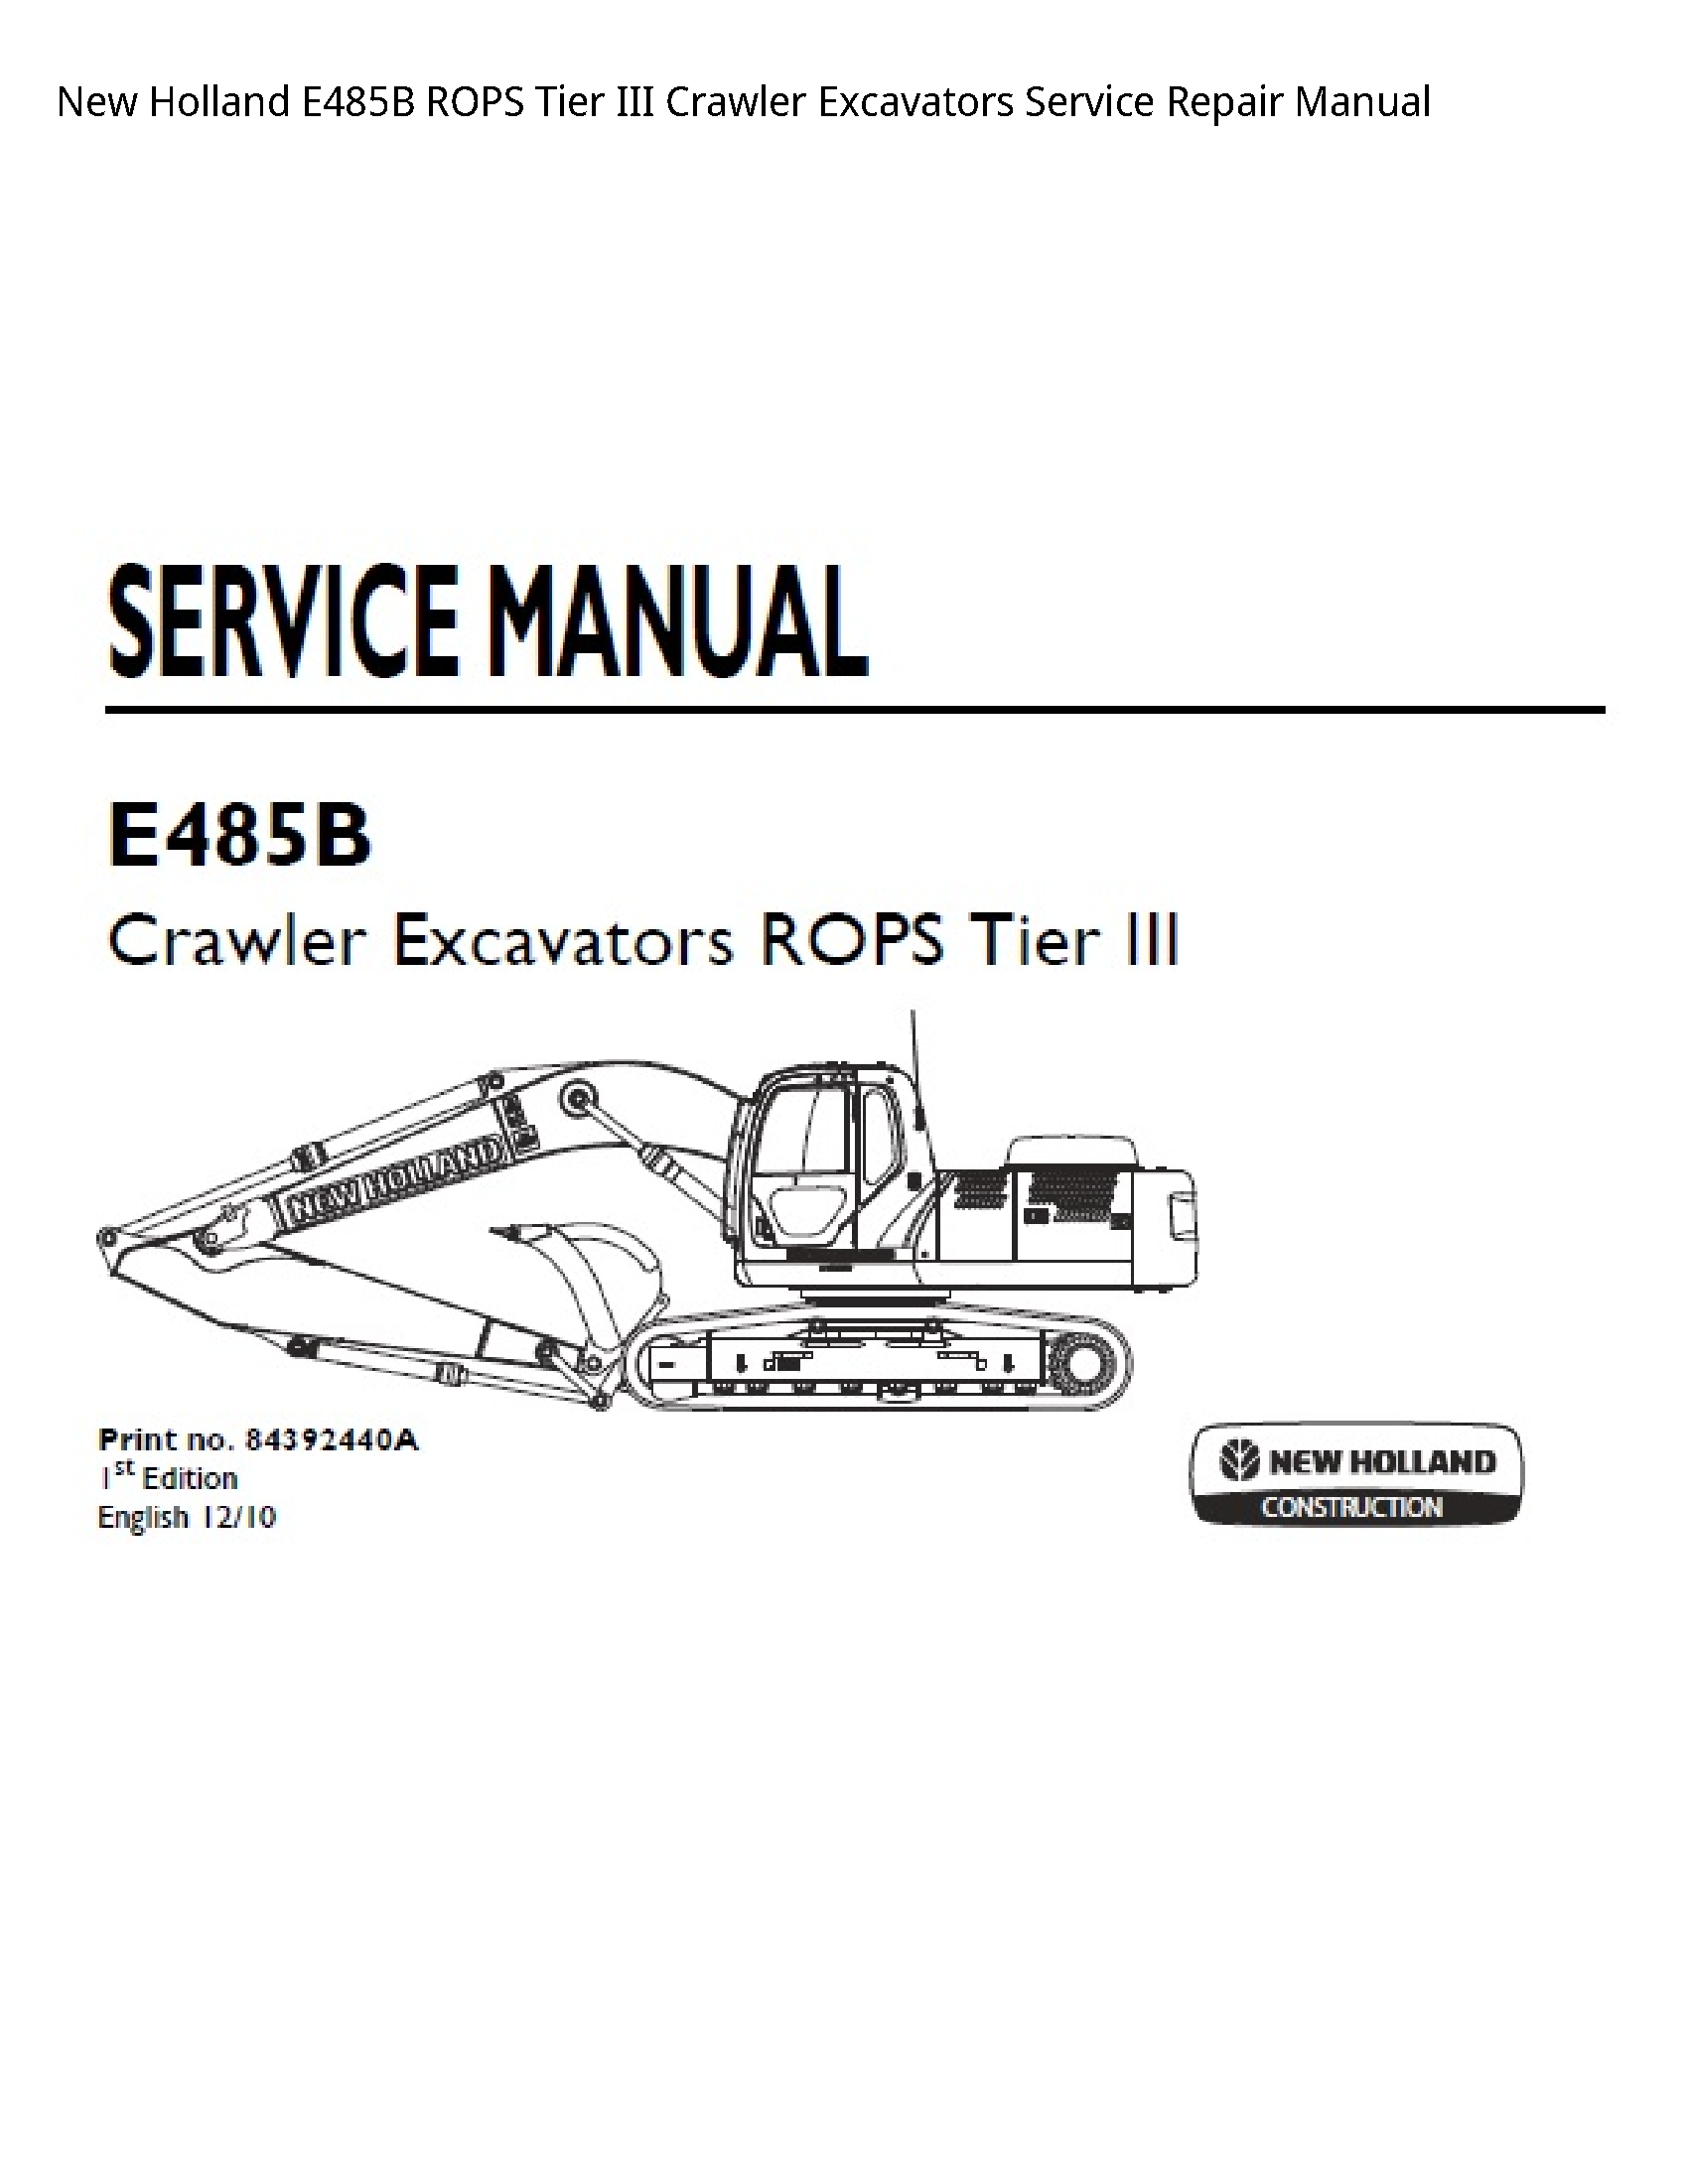 New Holland E485B ROPS Tier III Crawler Excavators manual